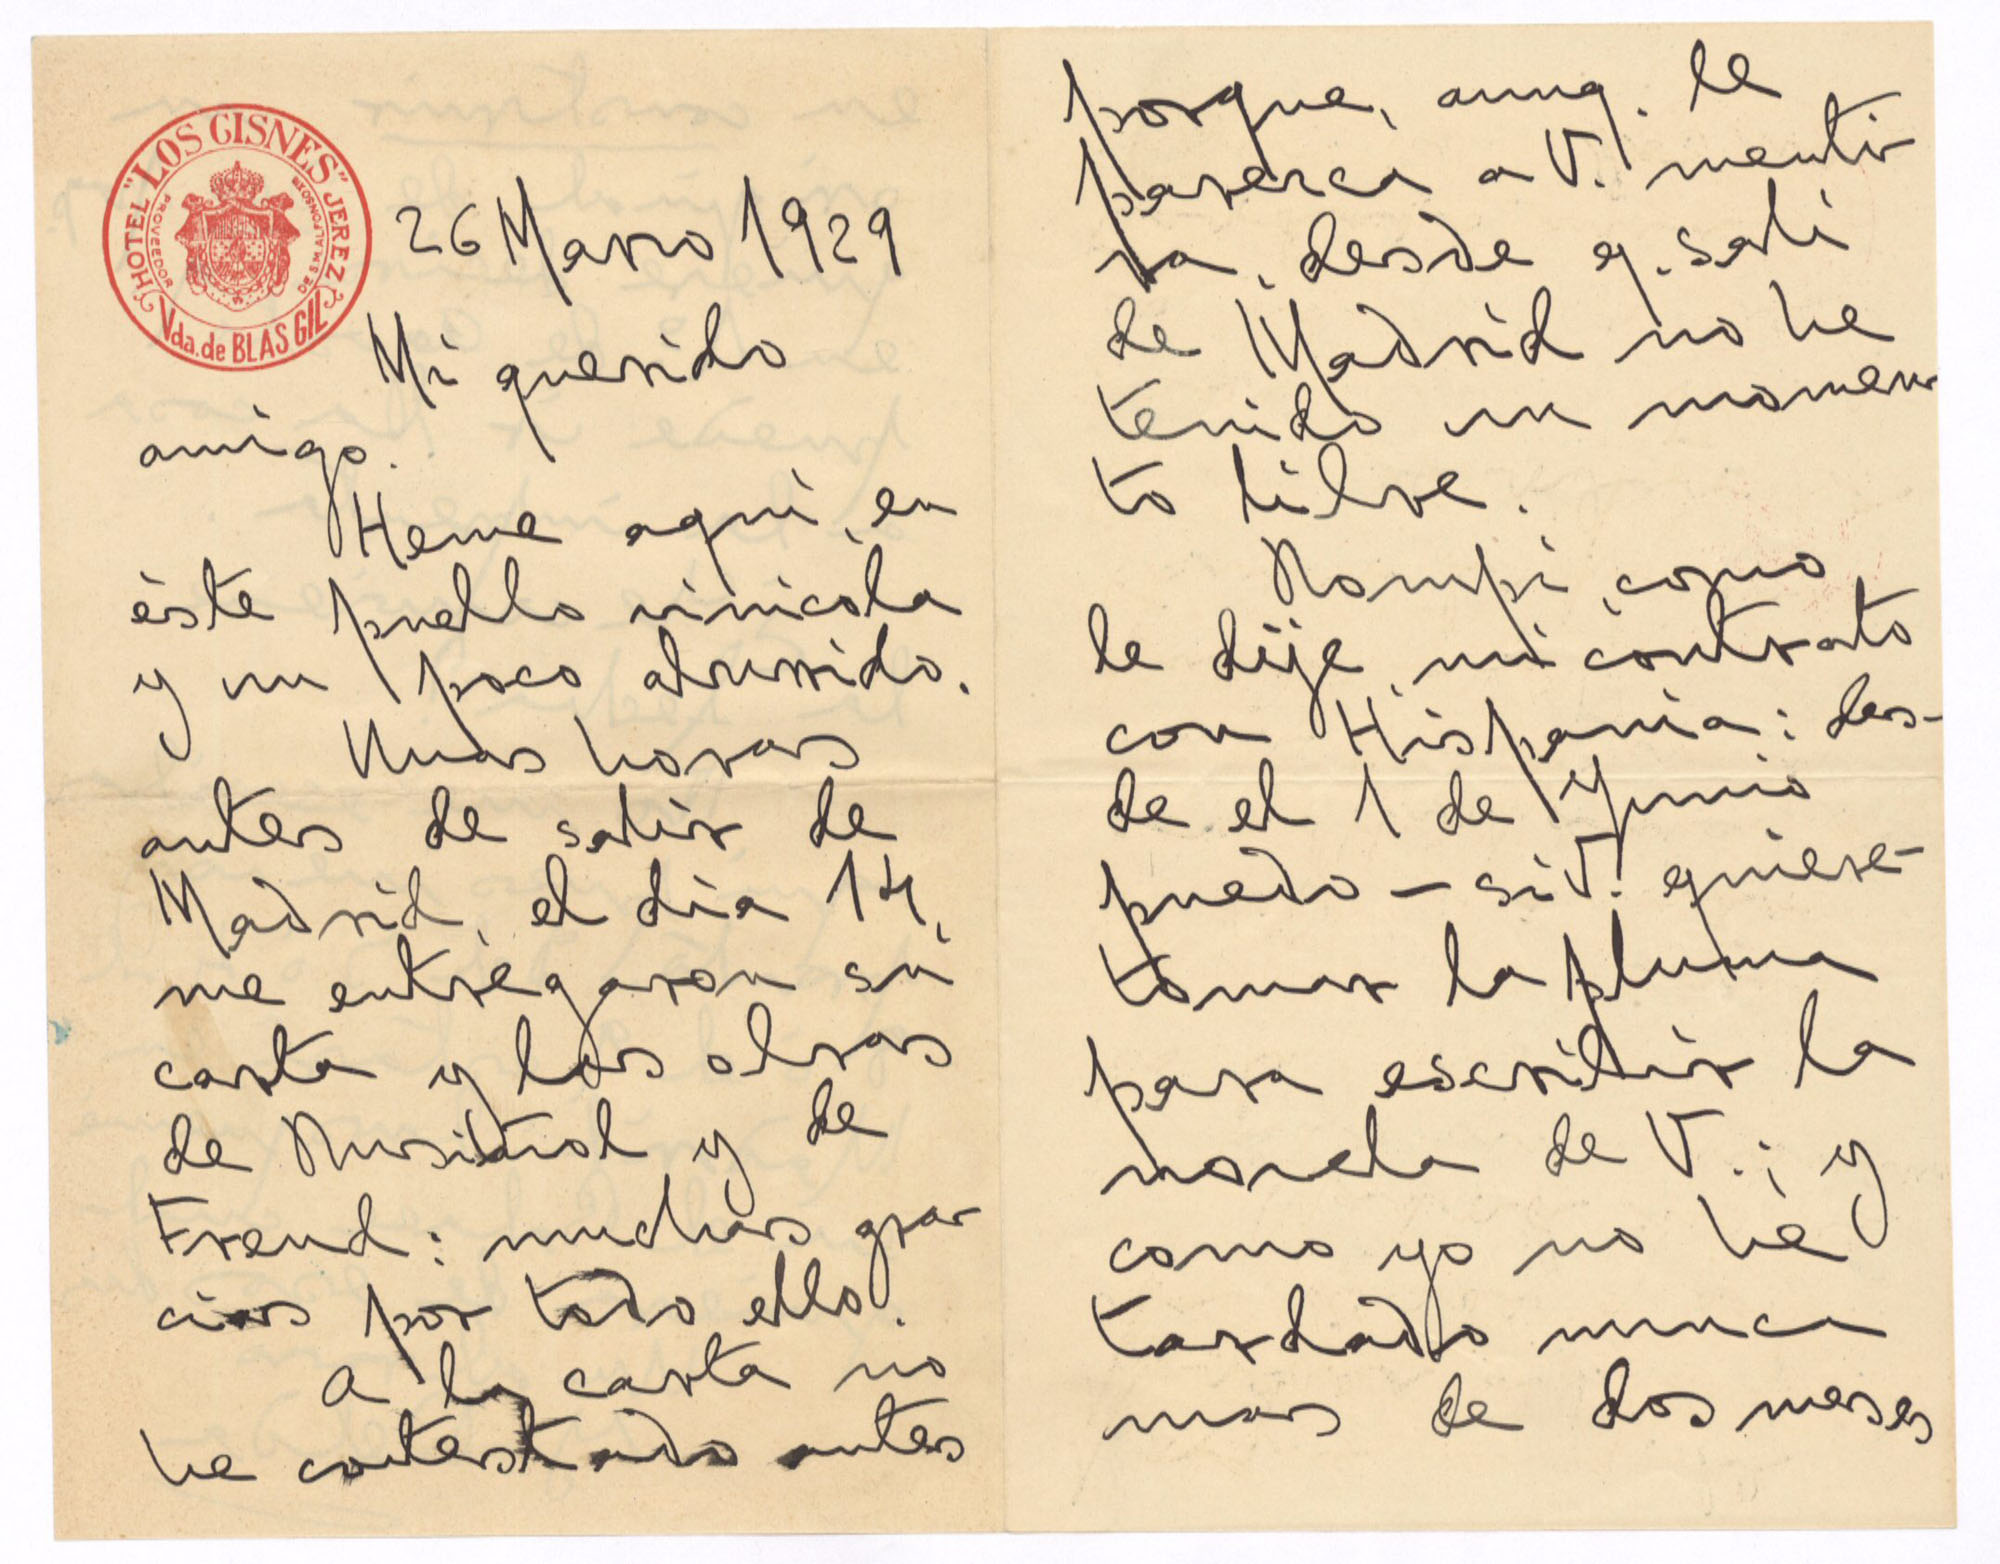 Carta de Joaquín Belda a José Ruiz-Castillo comunicándole su rescisión de contrato con Hispania y ofreciéndose para escribirle una novela.